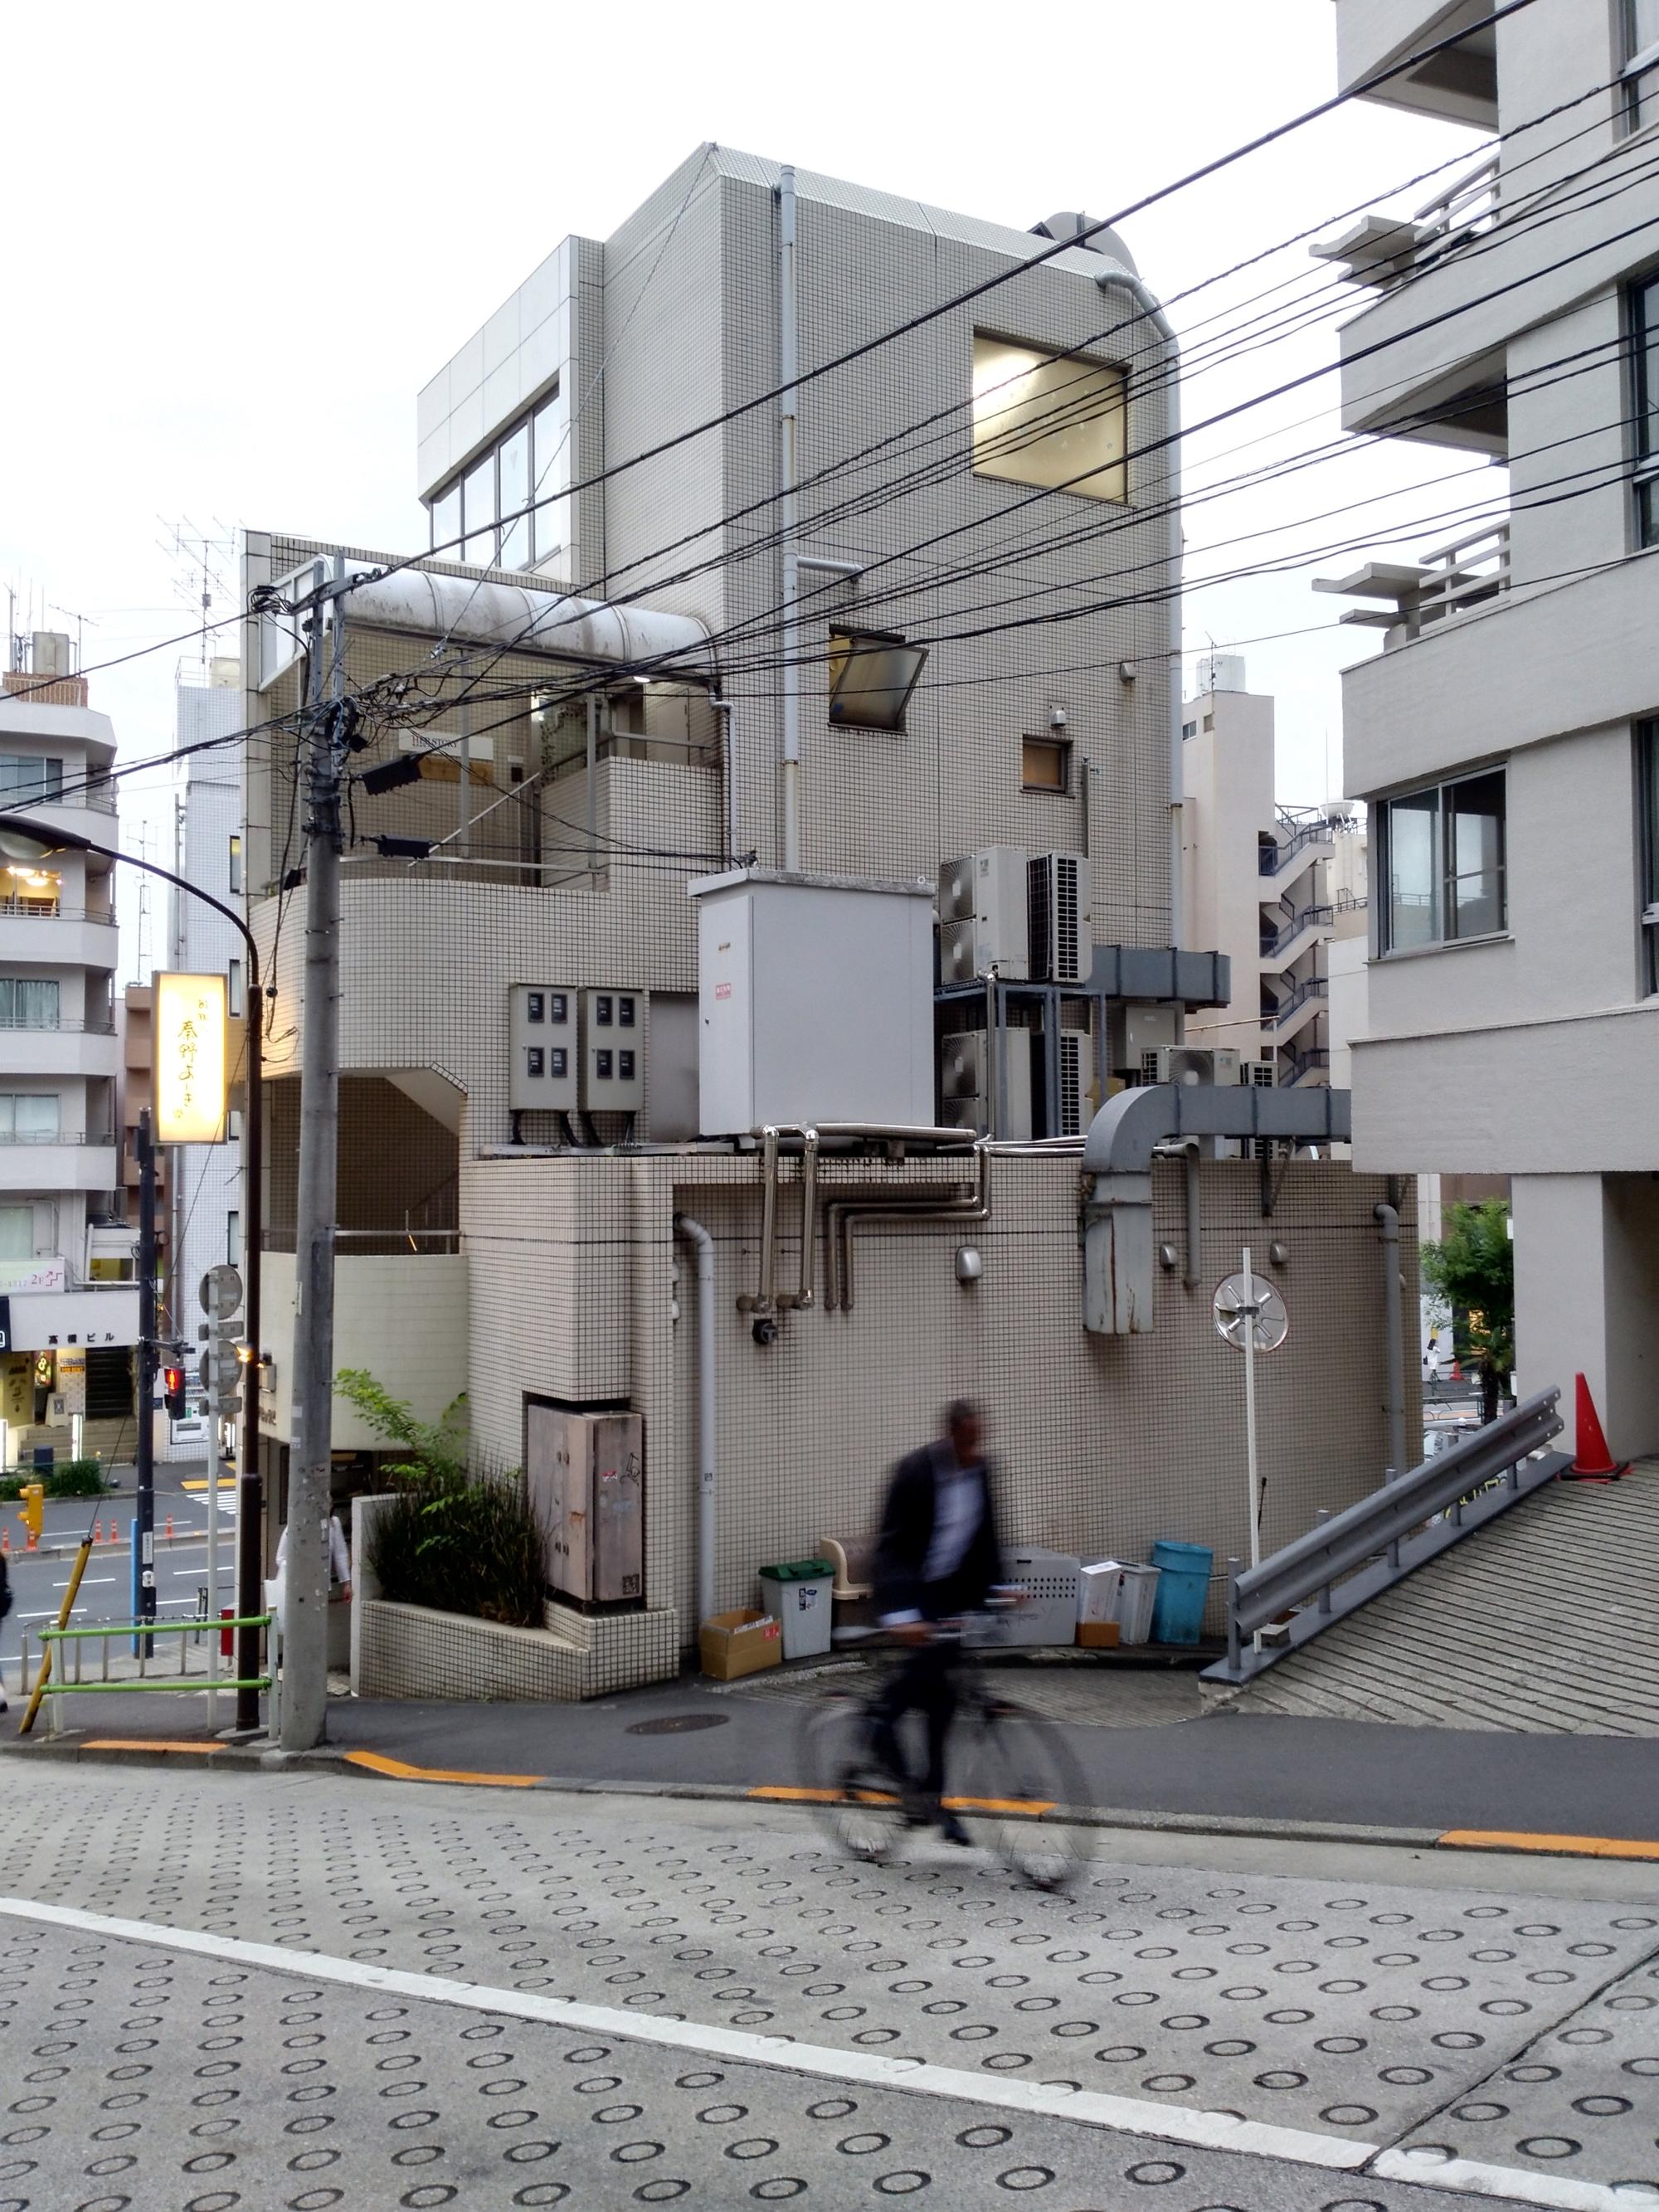 Tokyo (2017) - Corner Building